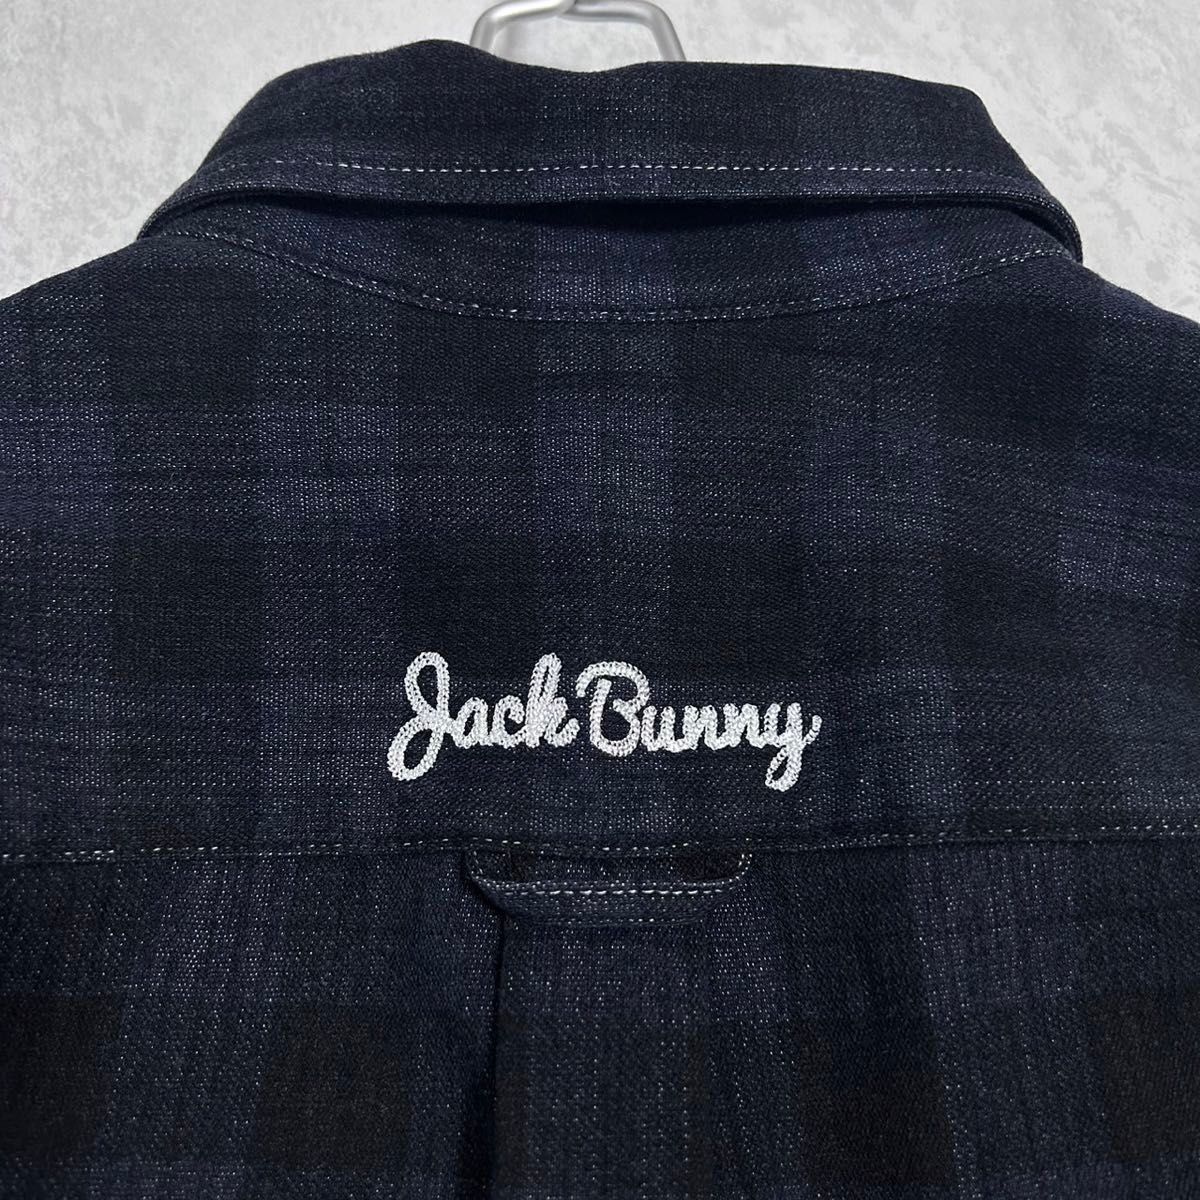 ジャックバニー チェックシャツ 長袖 6サイズ パーリーゲイツ Jack Bunny